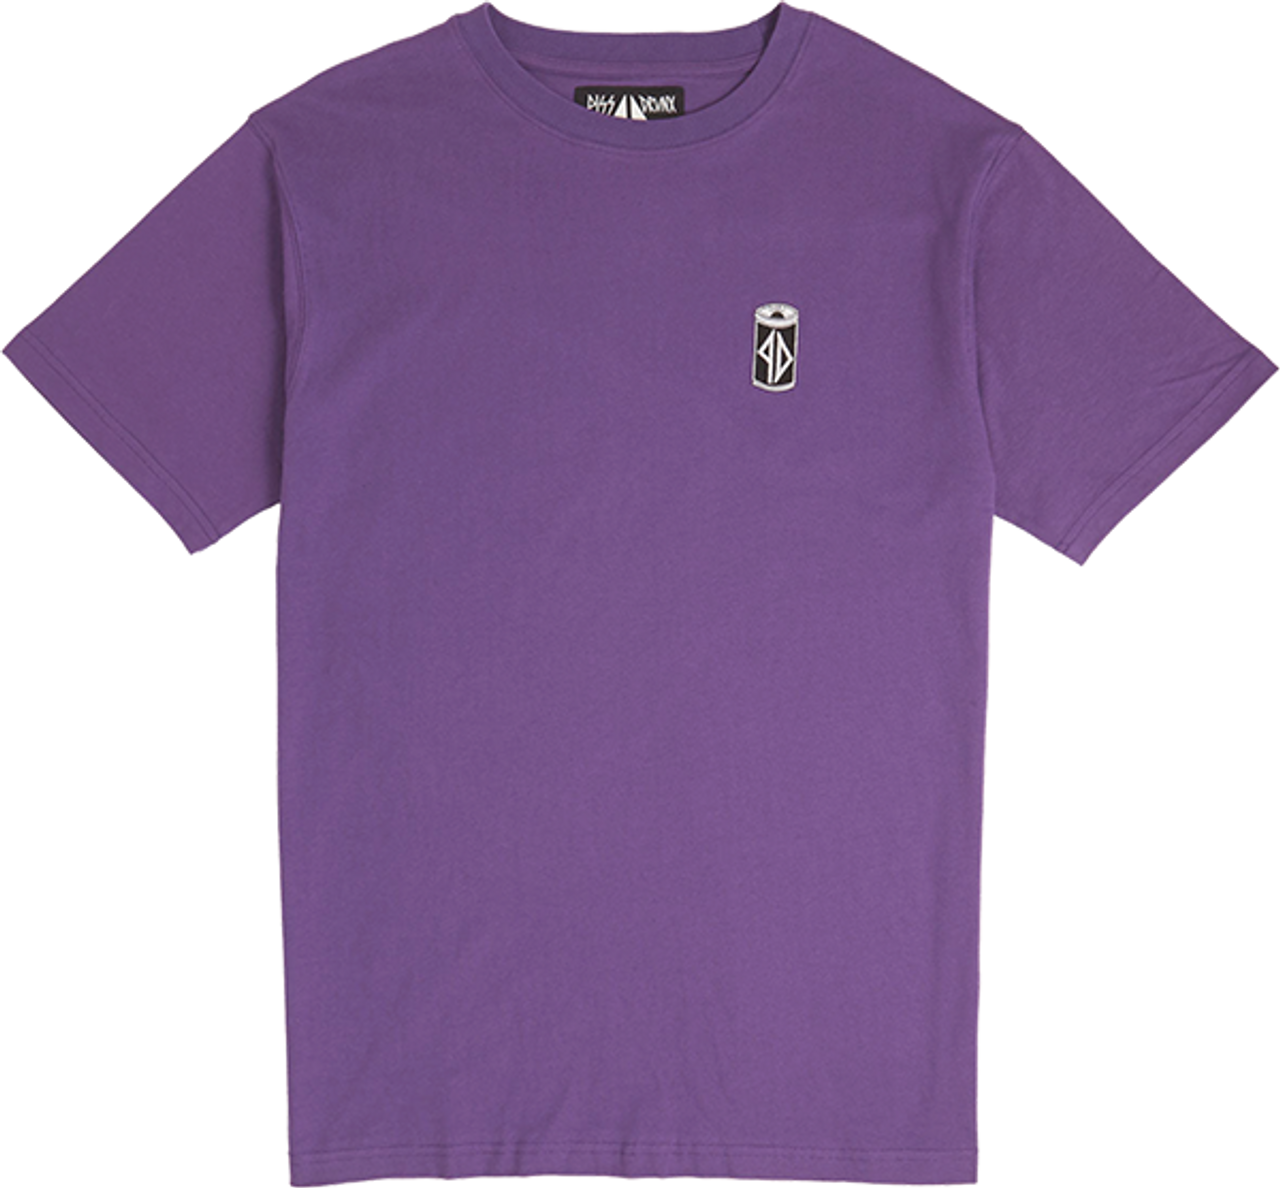 Piss Tshirt Drunx Can Do Ss Tshirt Xl-Pur | Boardparadise.com